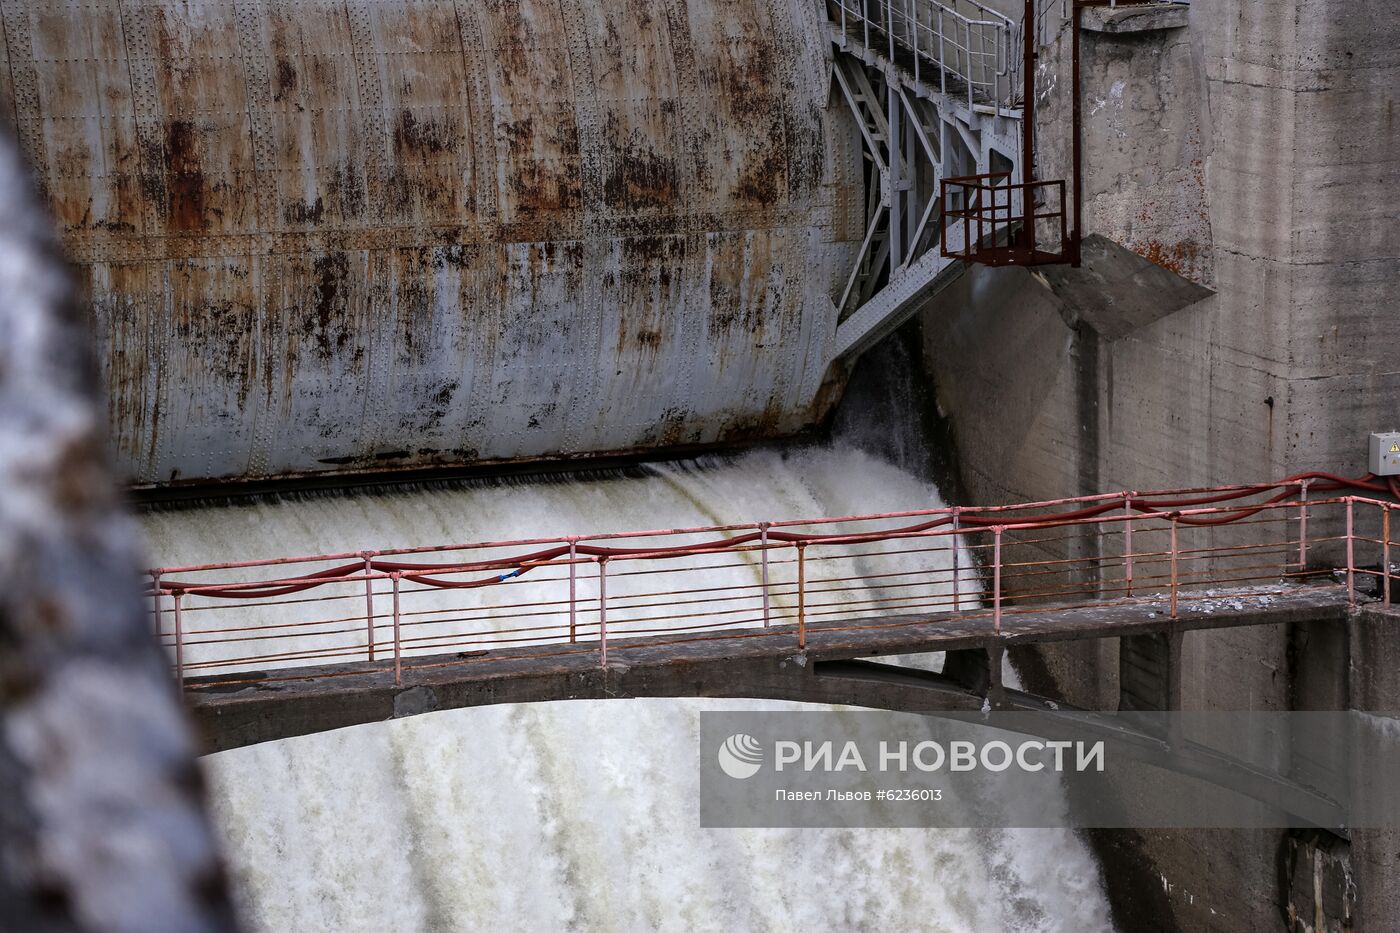 Сброс воды на водохранилищах в Мурманской области